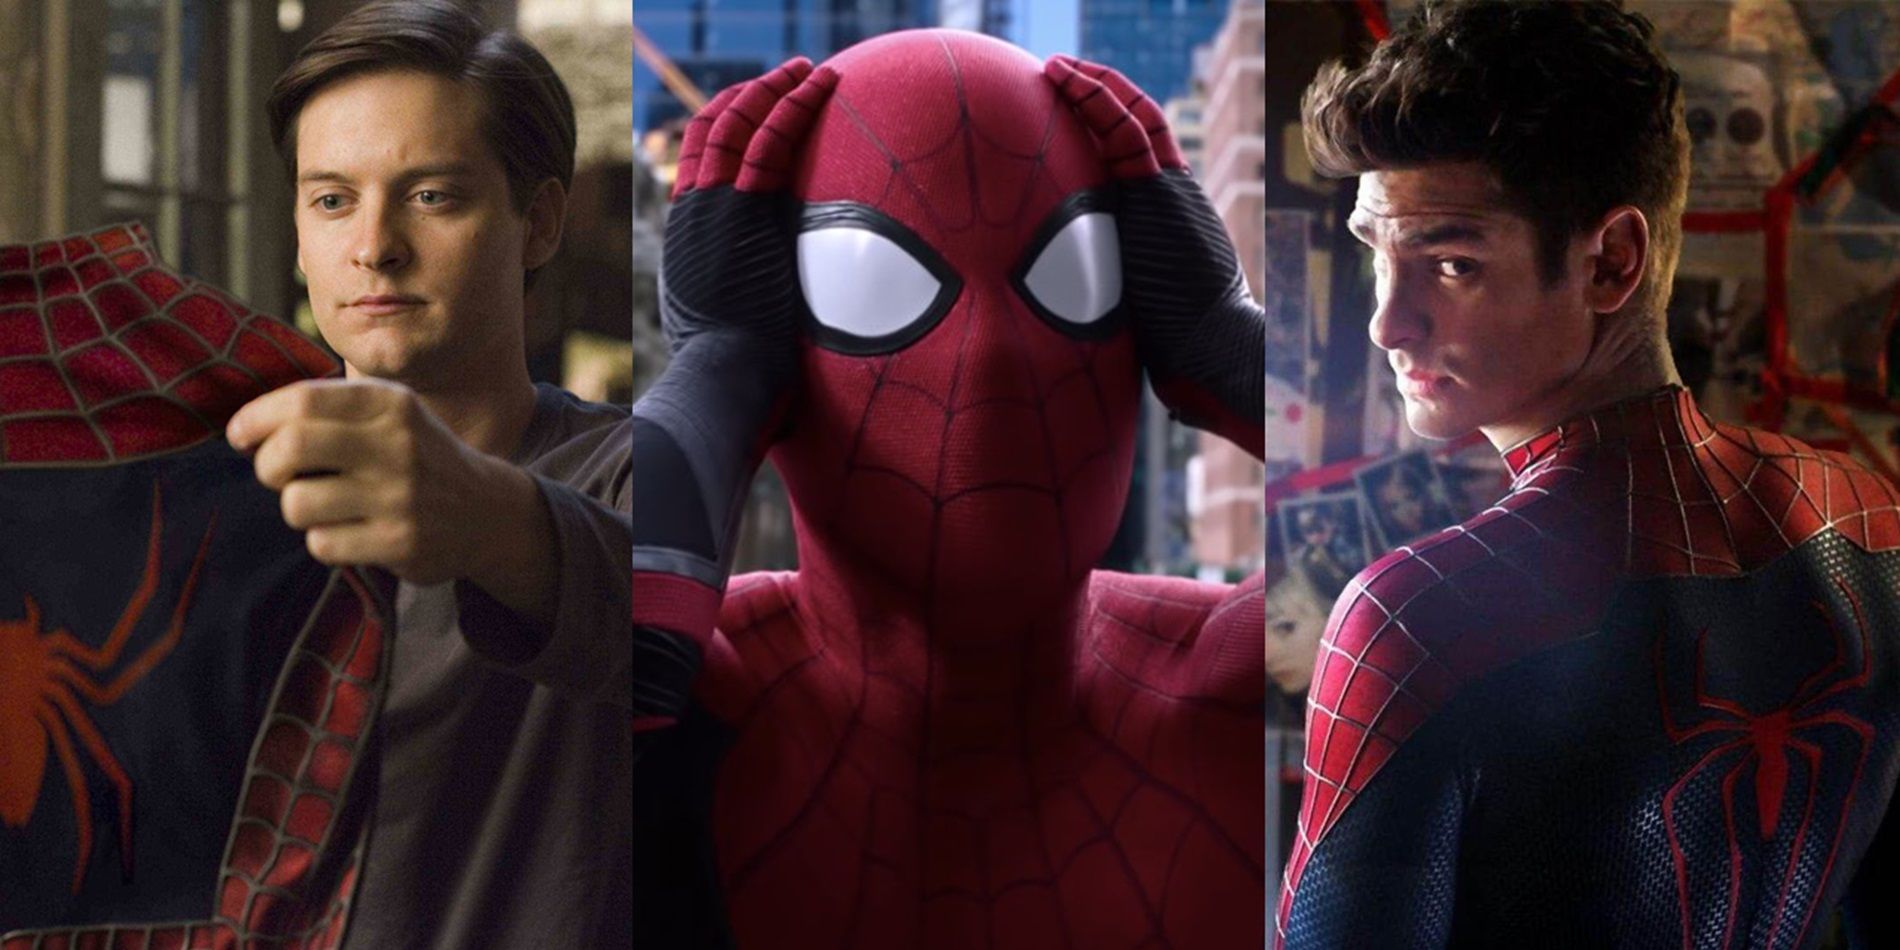 Actor de Spider-Man emocionado por el equipo Prospect Of Holland / Maguire